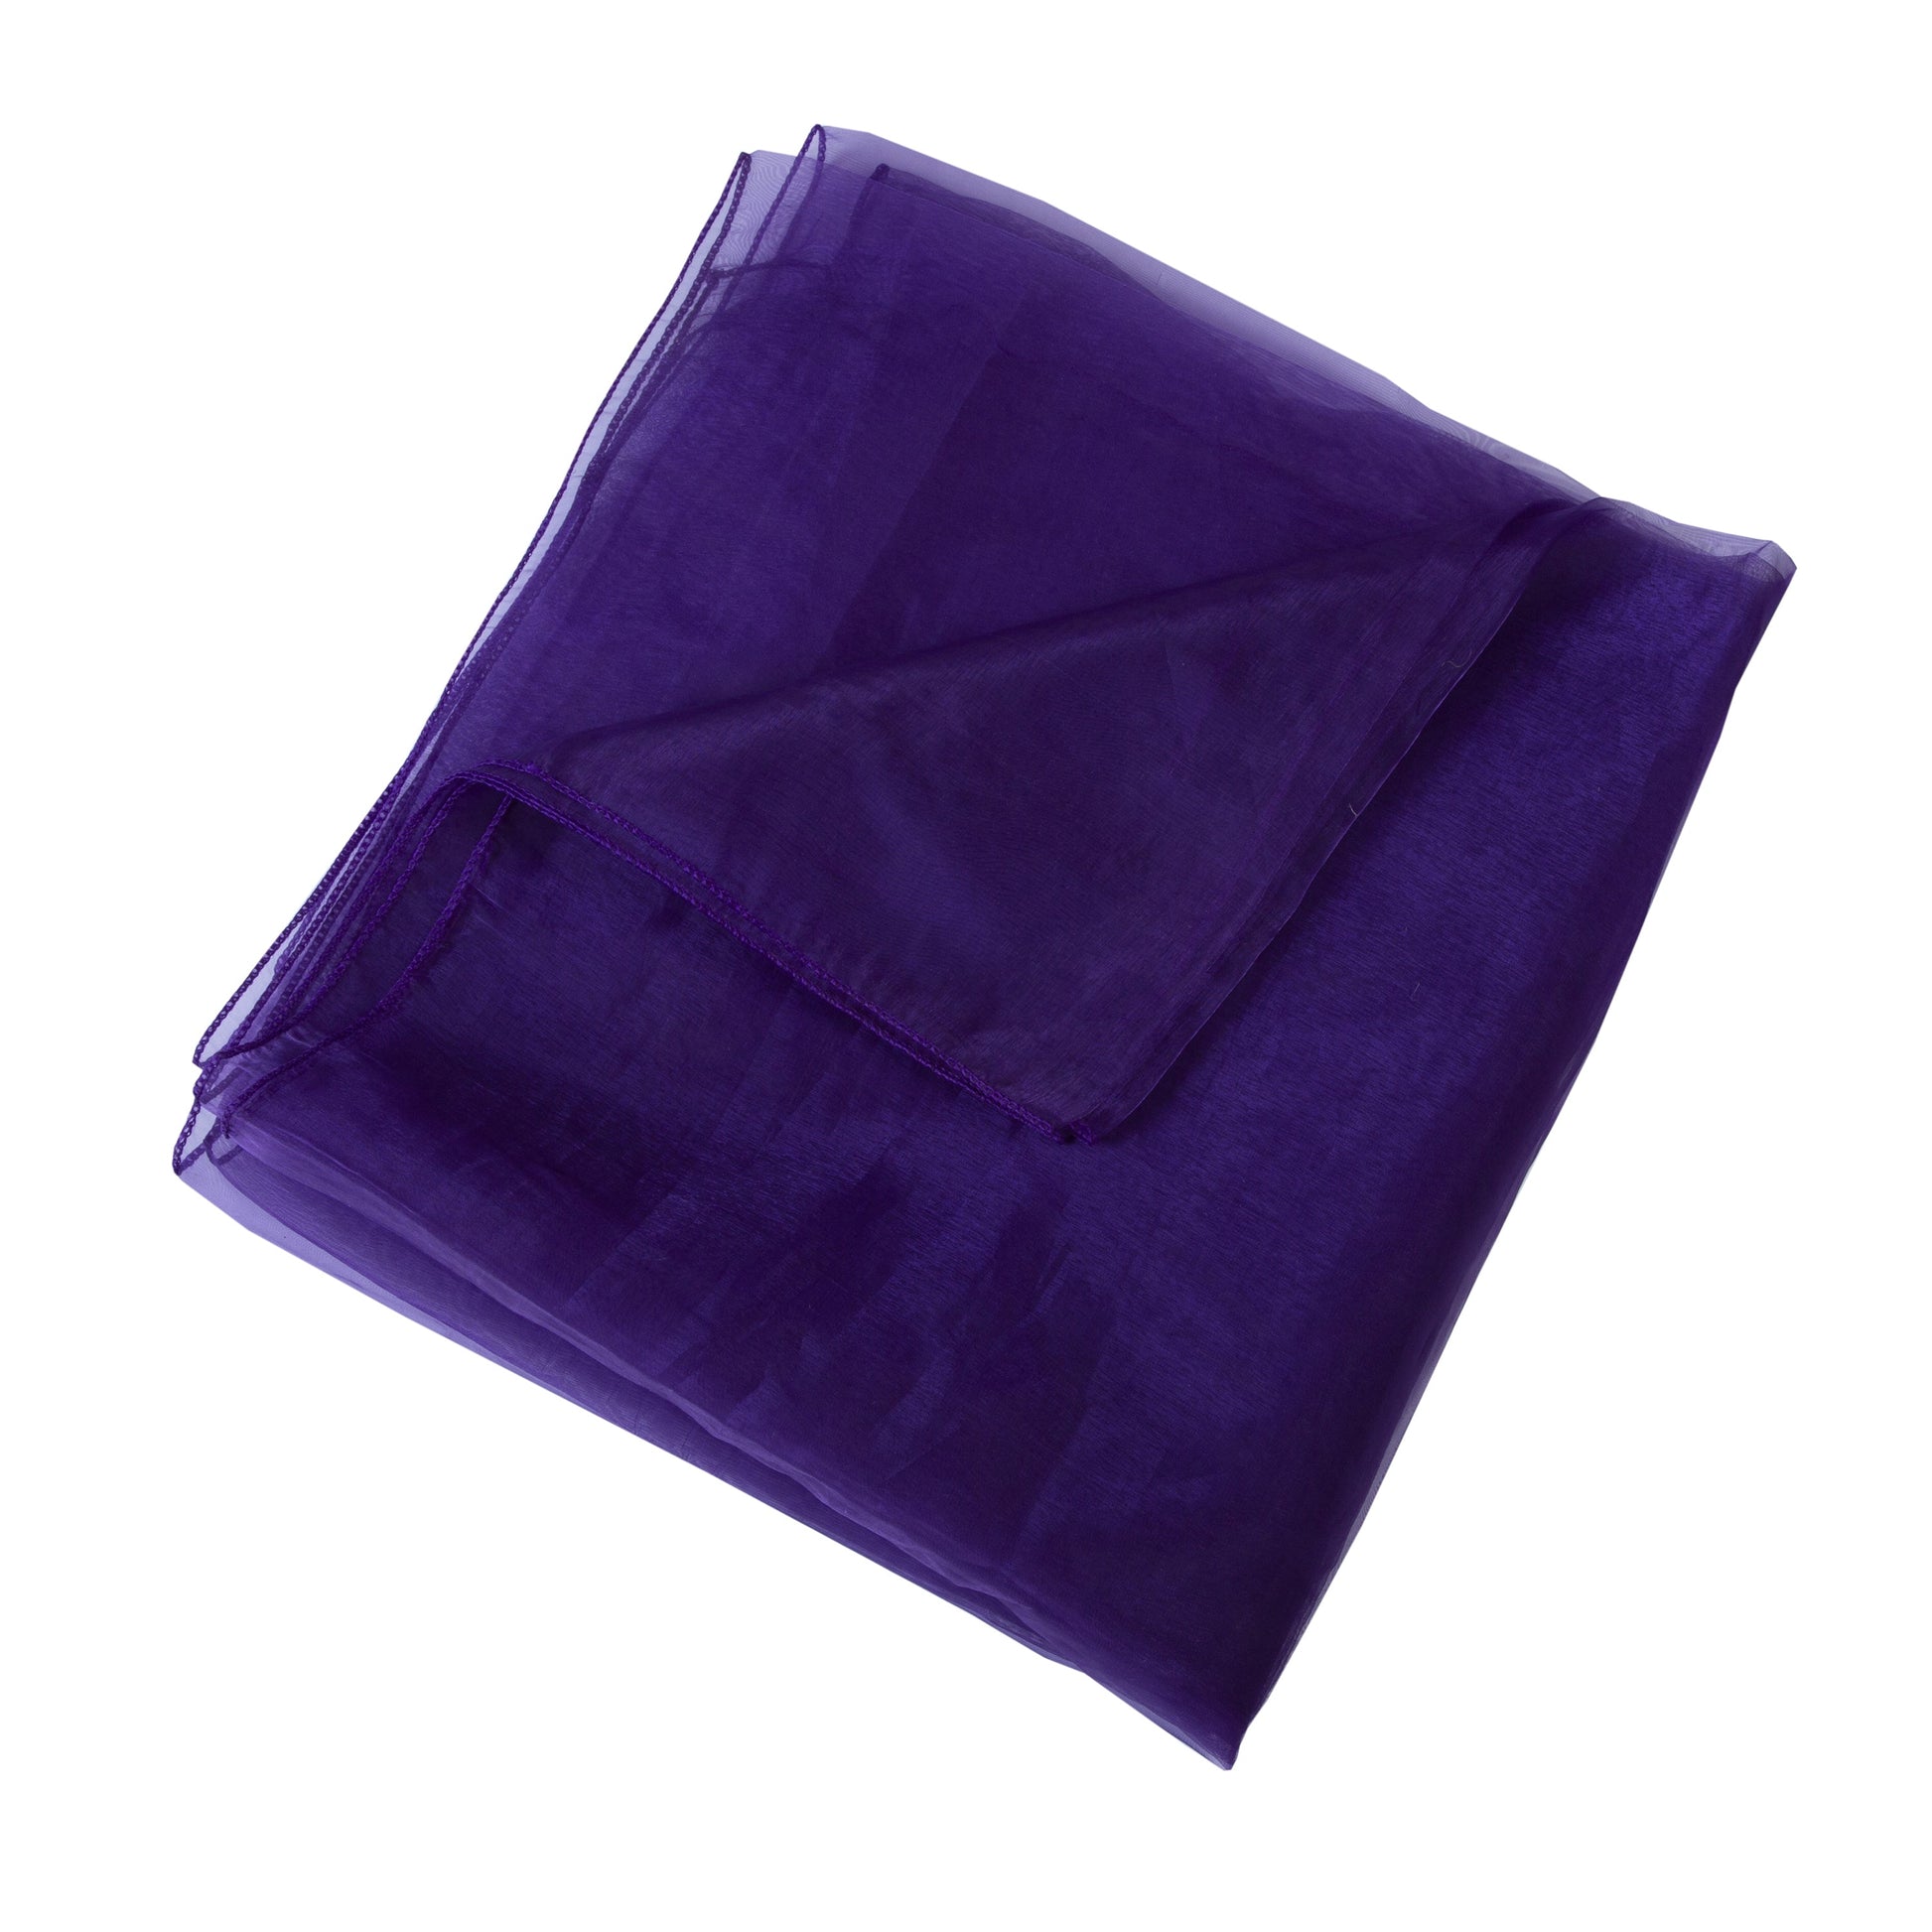 Cadbury Purple,55c22f60-f9a6-40ca-a51f-8f13730f3d37